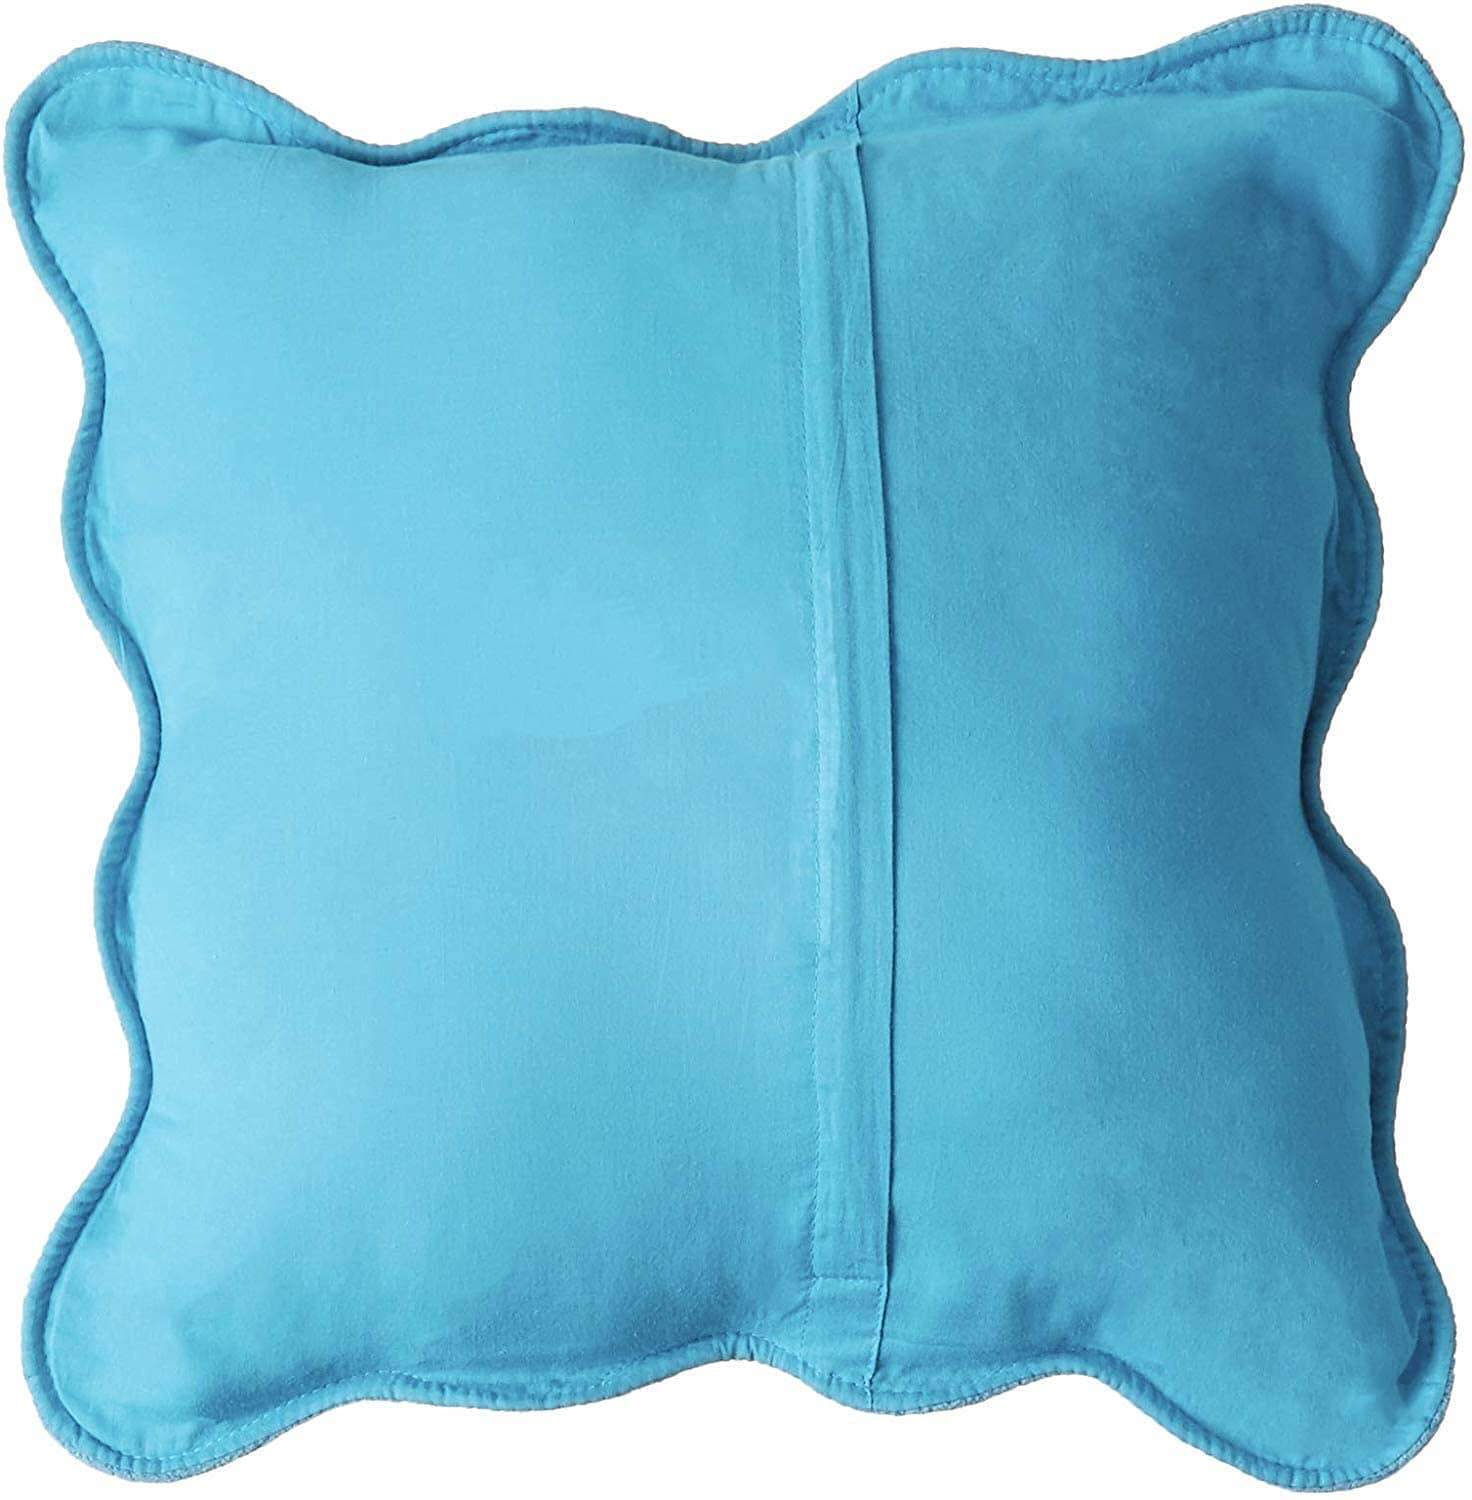 Tache Super Soft Blue Scalloped Magic Carpet Quilted Fleece Bedspread Set (DXJ109042-2) - Tache Home Fashion